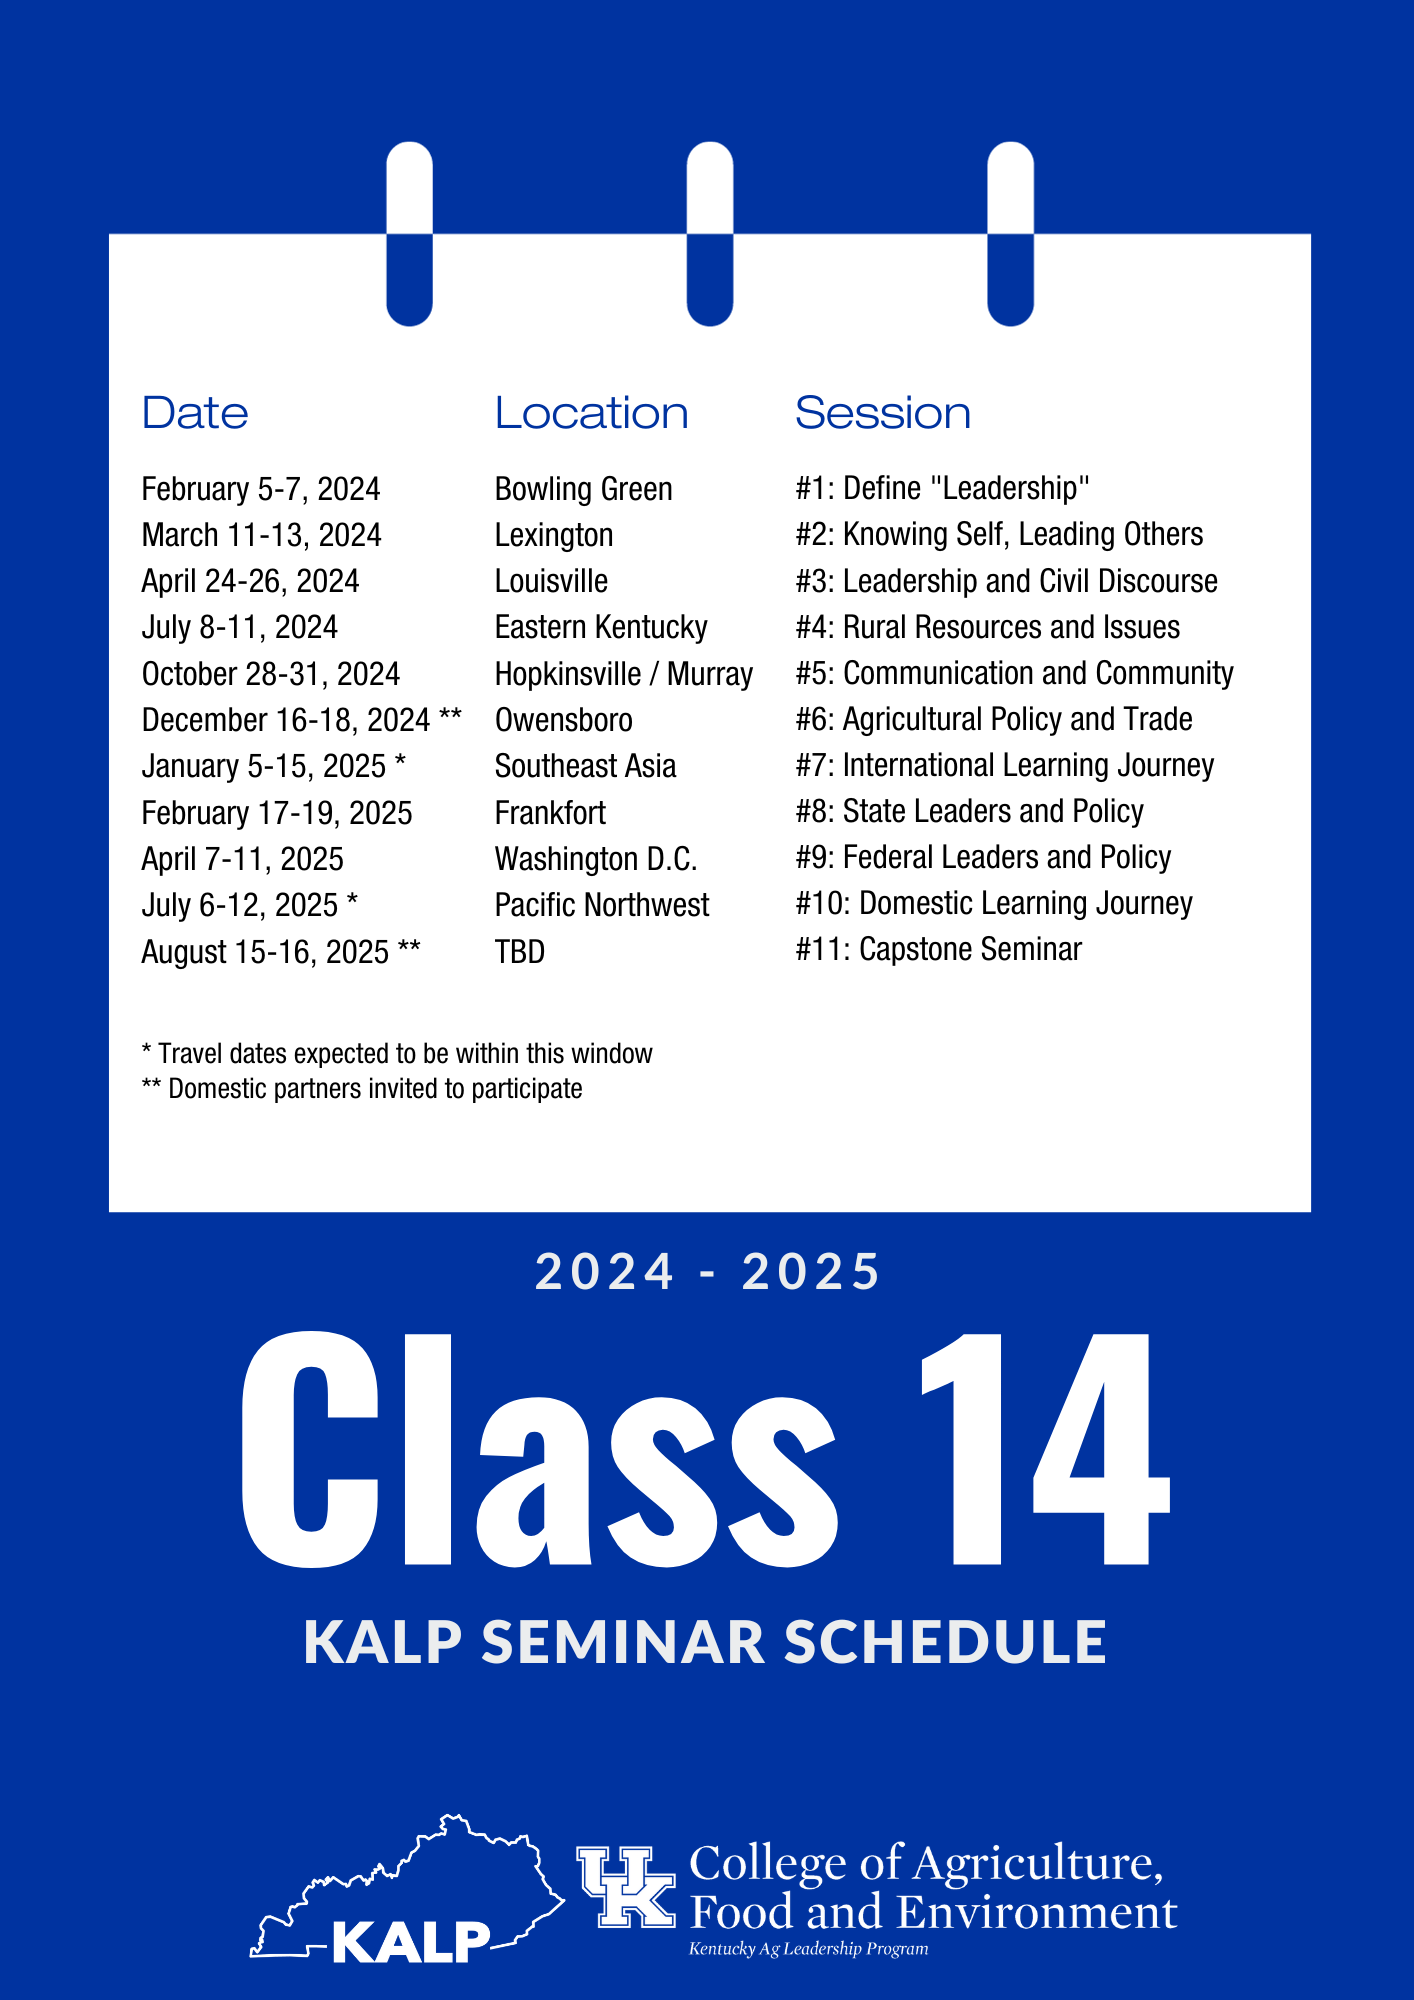 KALP Class 14 Schedule